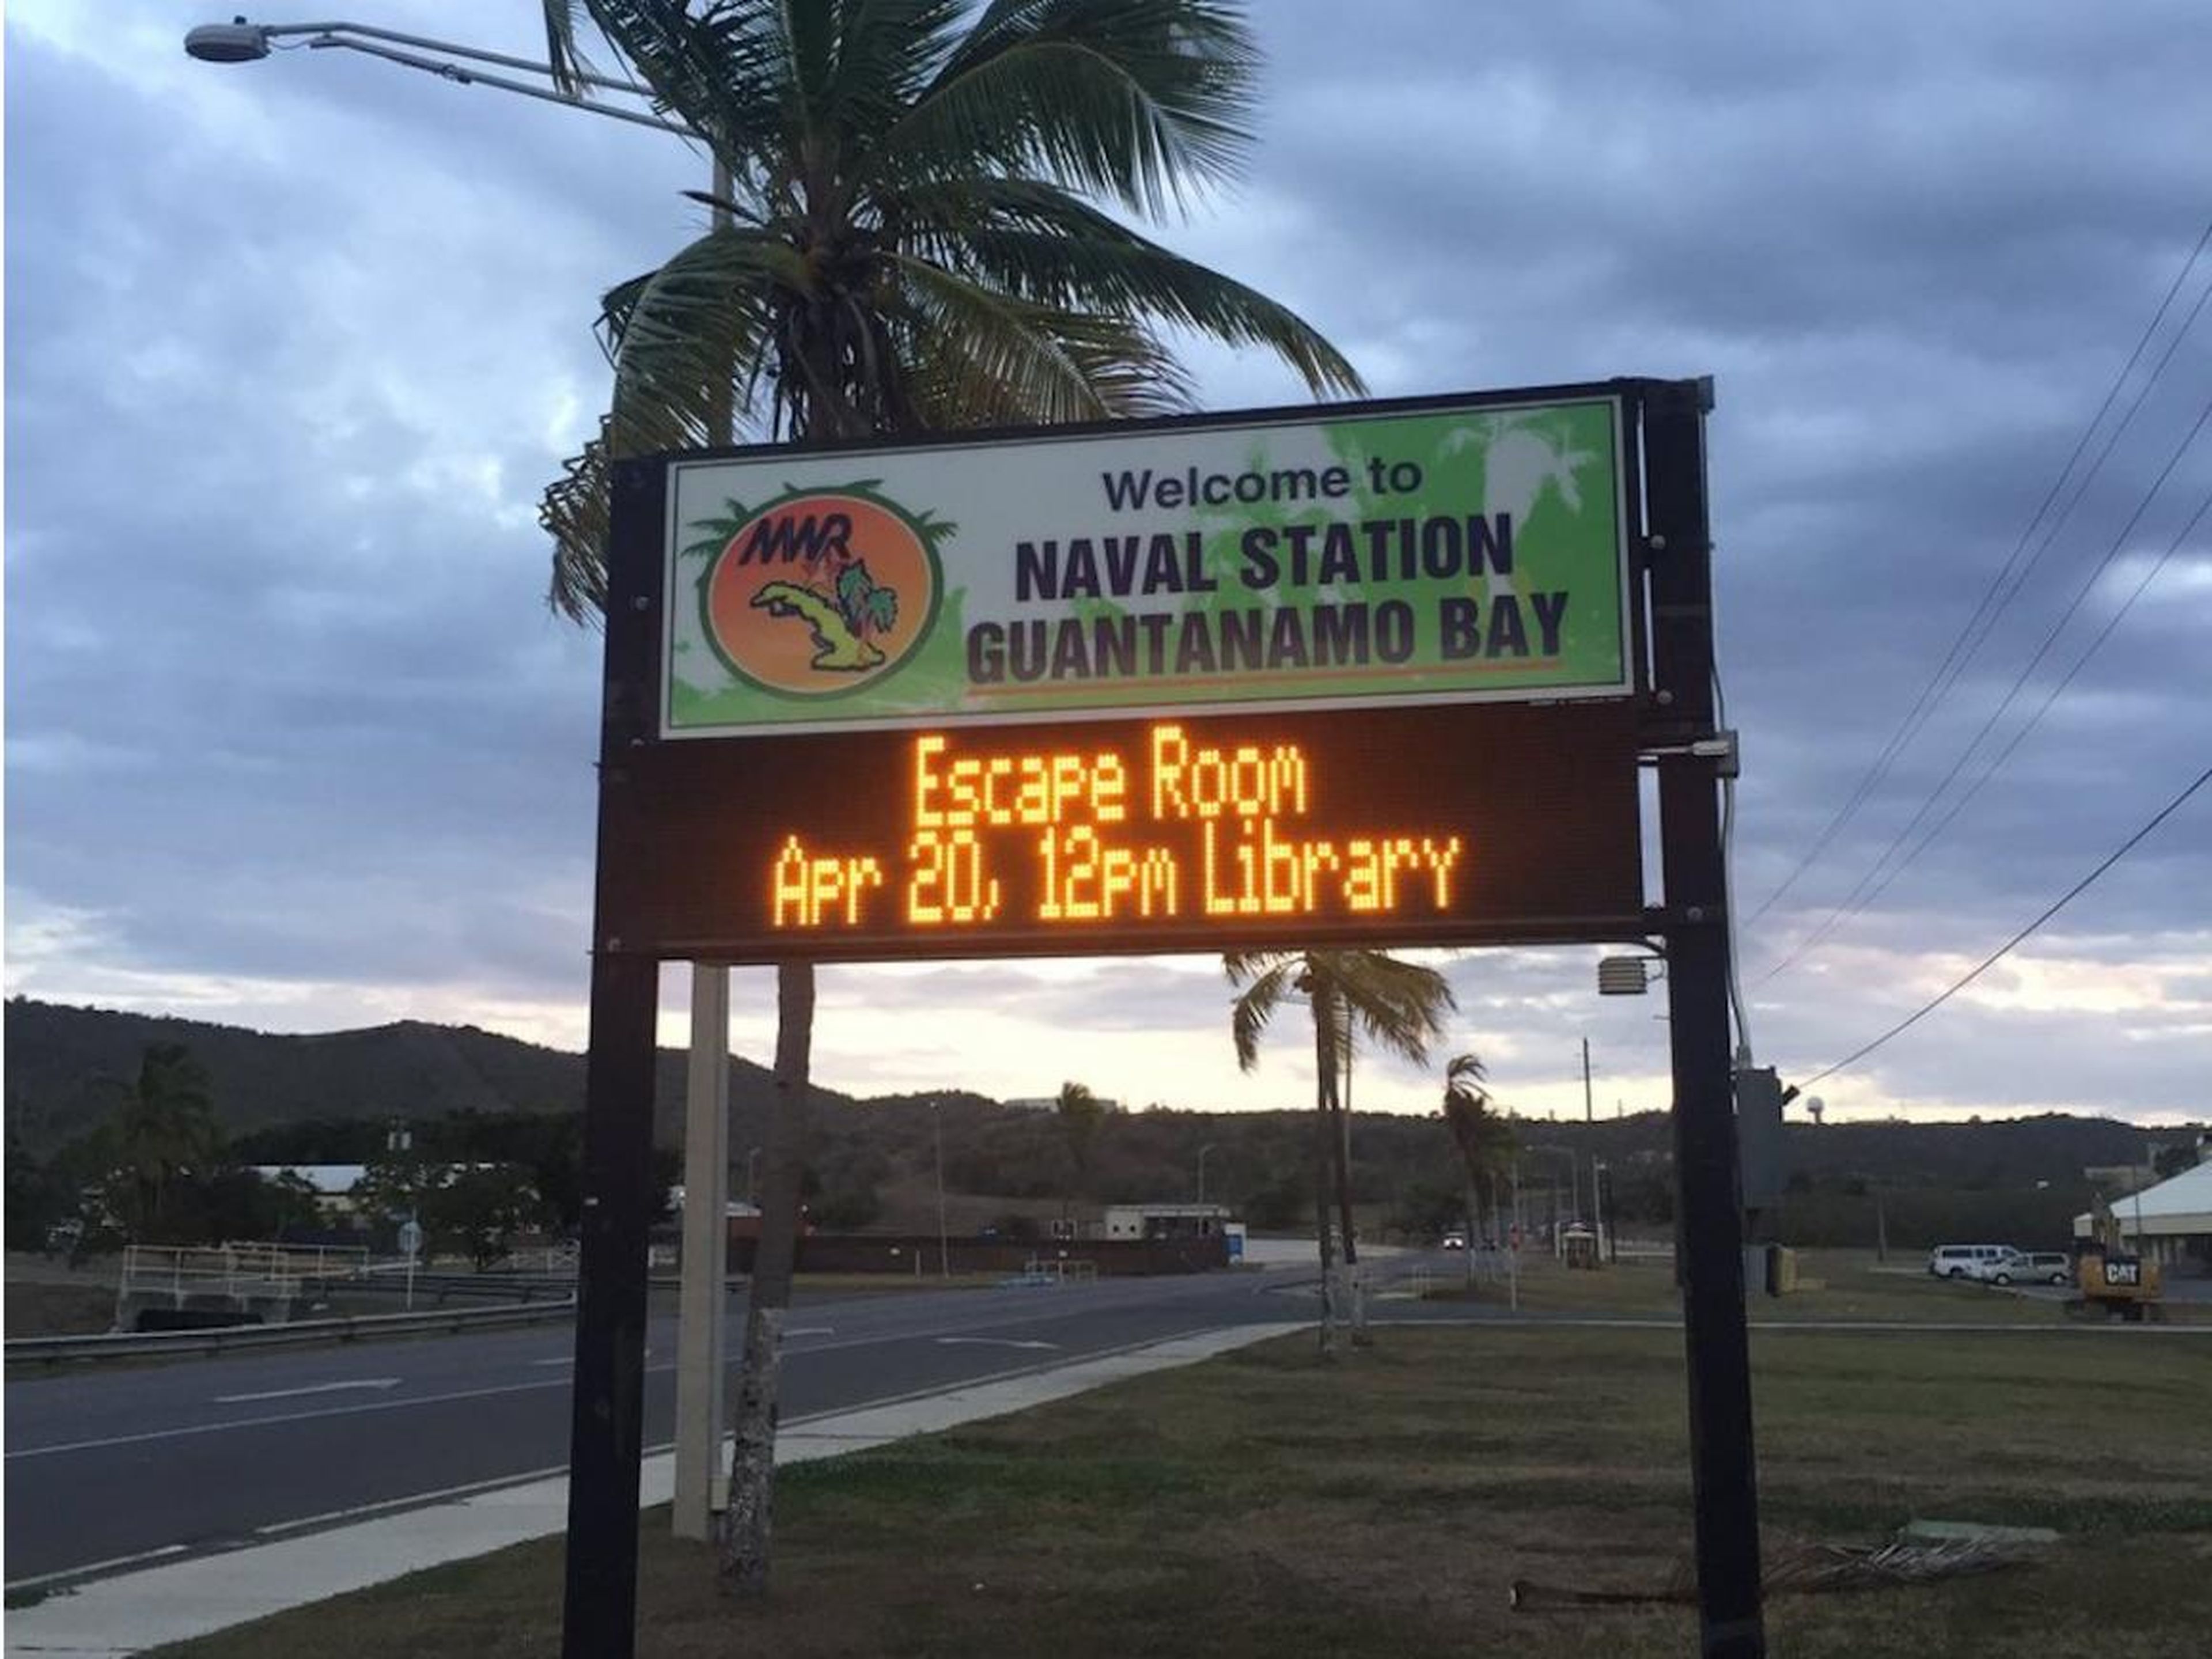 Un letrero en la carretera en la Estación Naval de la Bahía de Guantánamo anunciando un Escape Room en la biblioteca local.